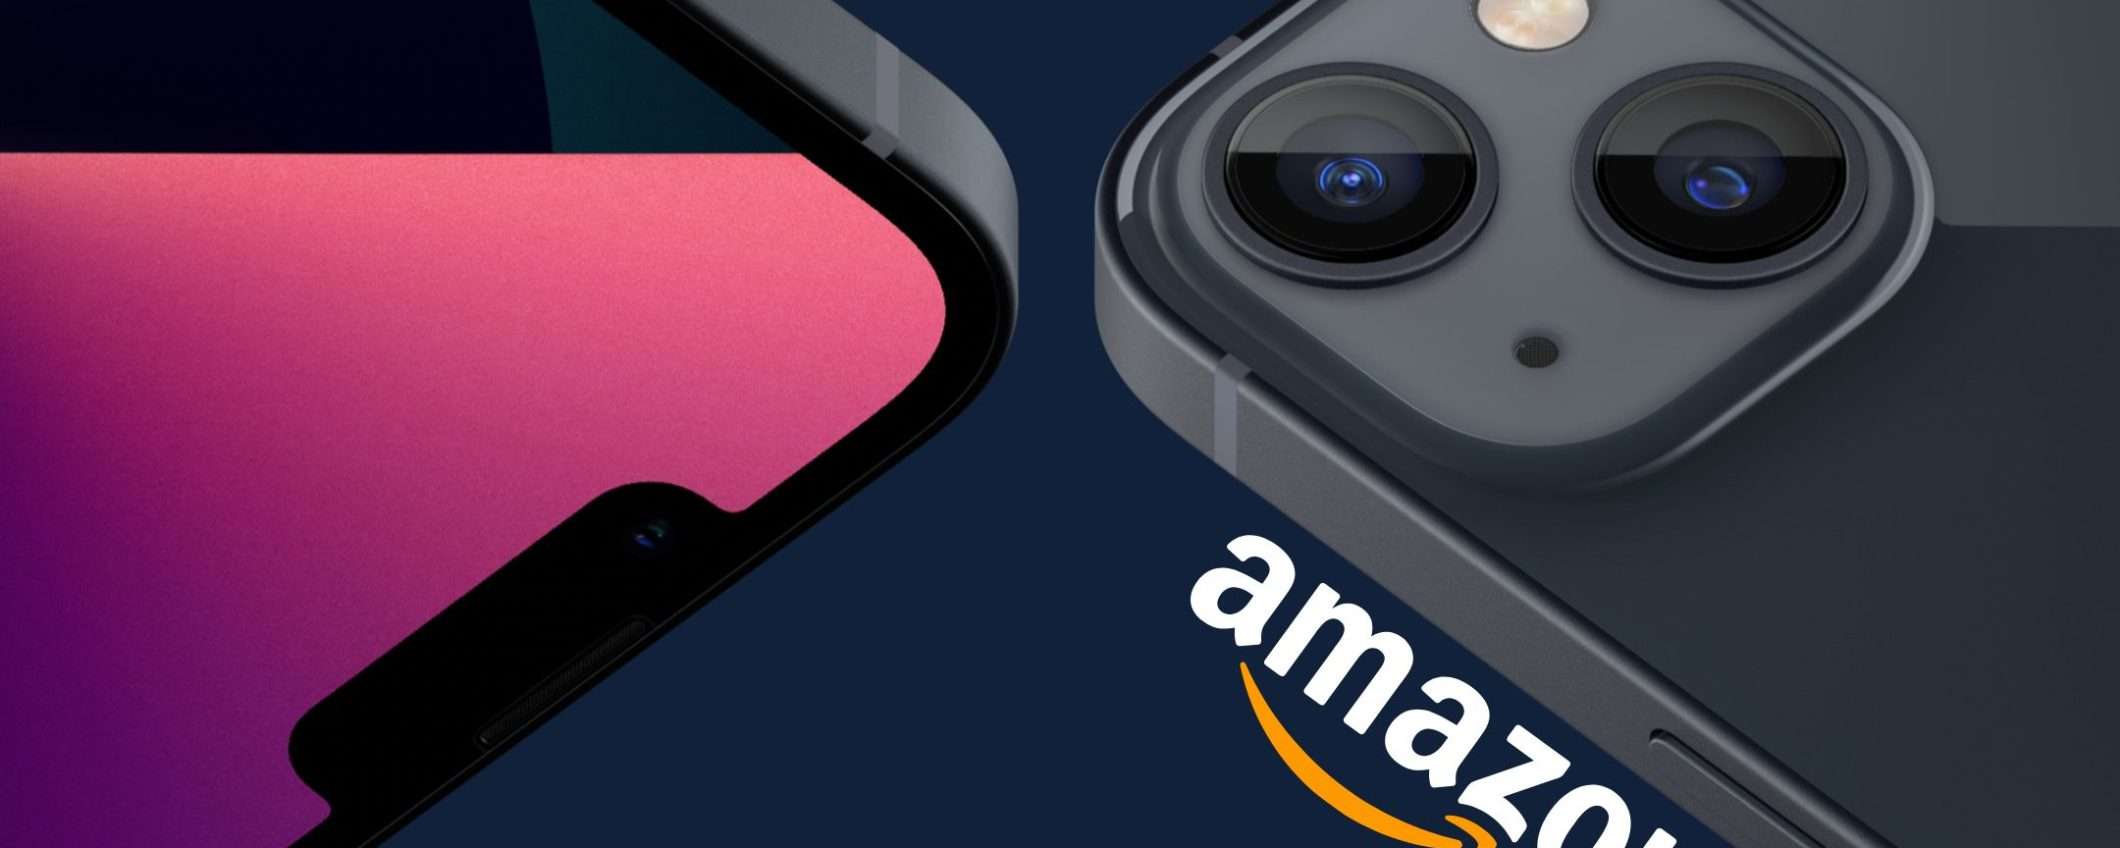 iPhone 13 a 769€ su Amazon: ha ancora senso acquistarlo oggi?